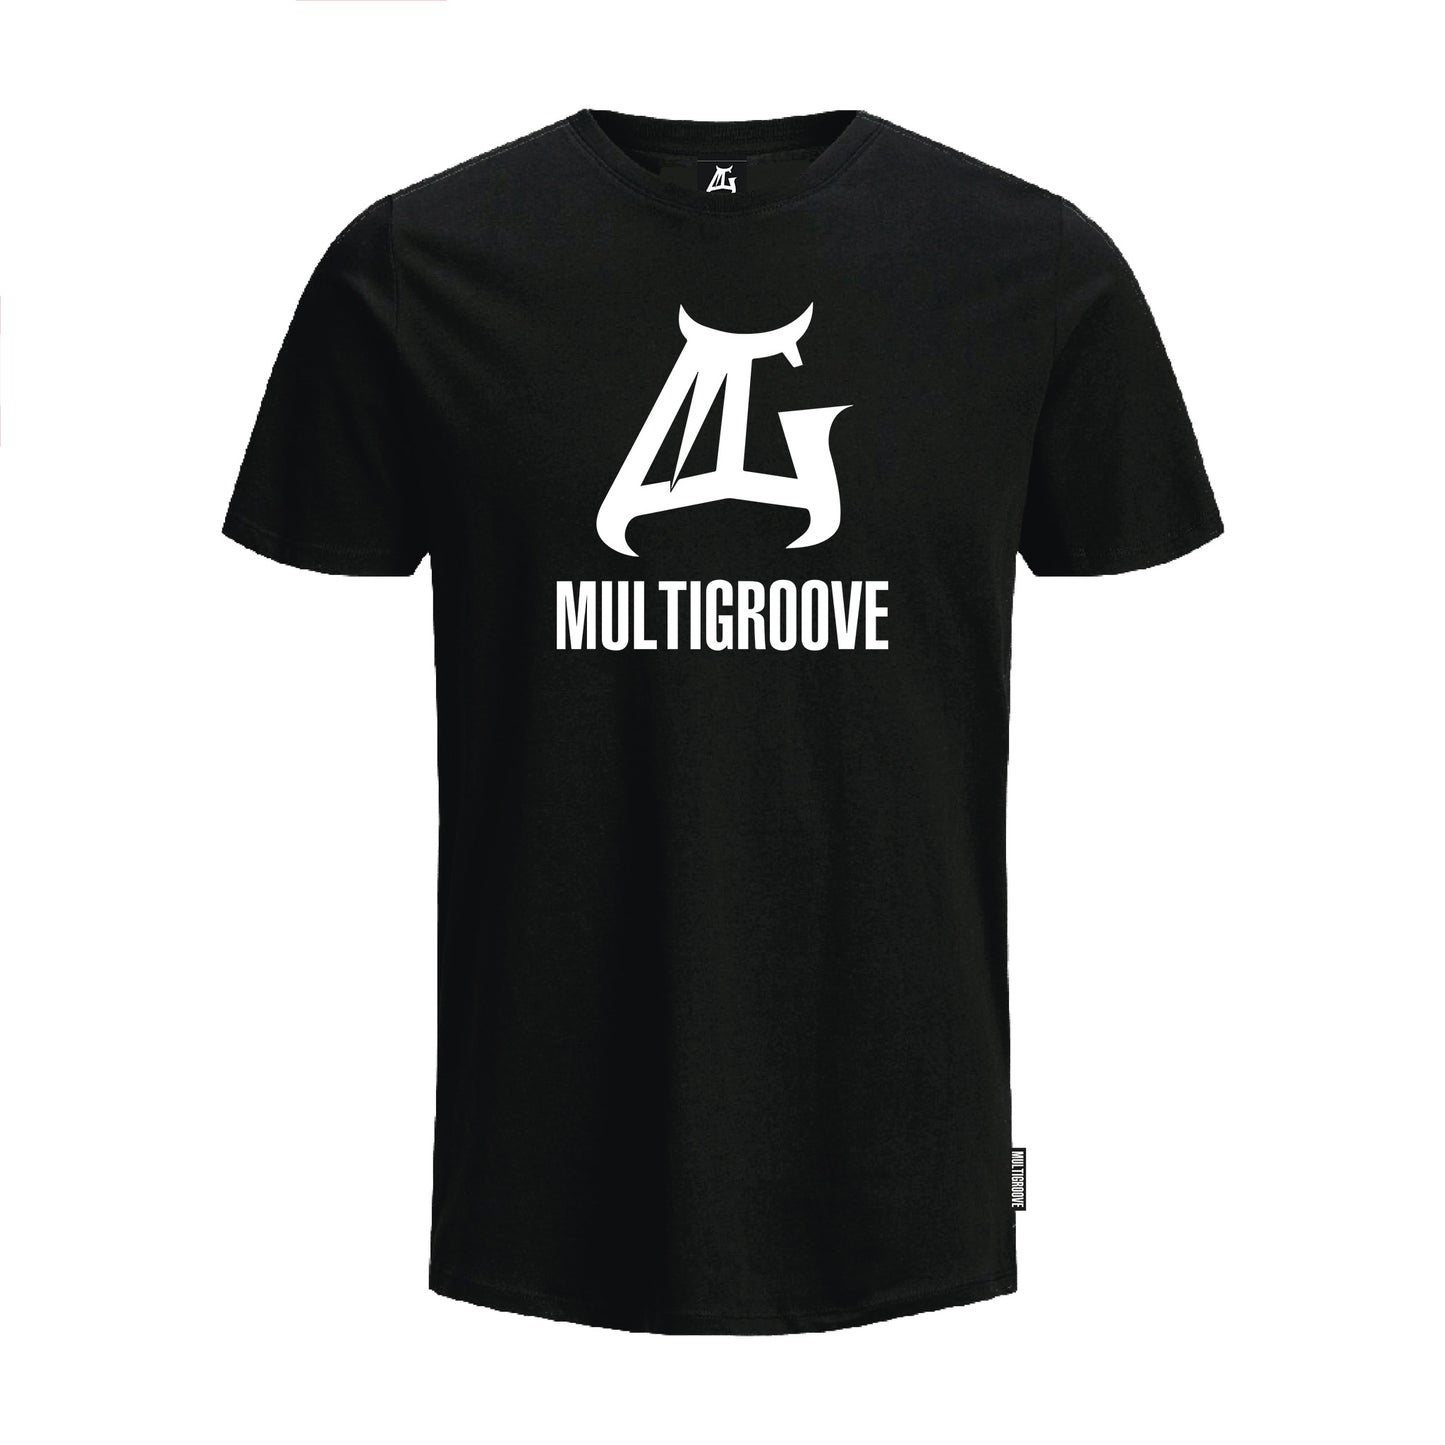 Multigroove Basic T-Shirt black with large logo